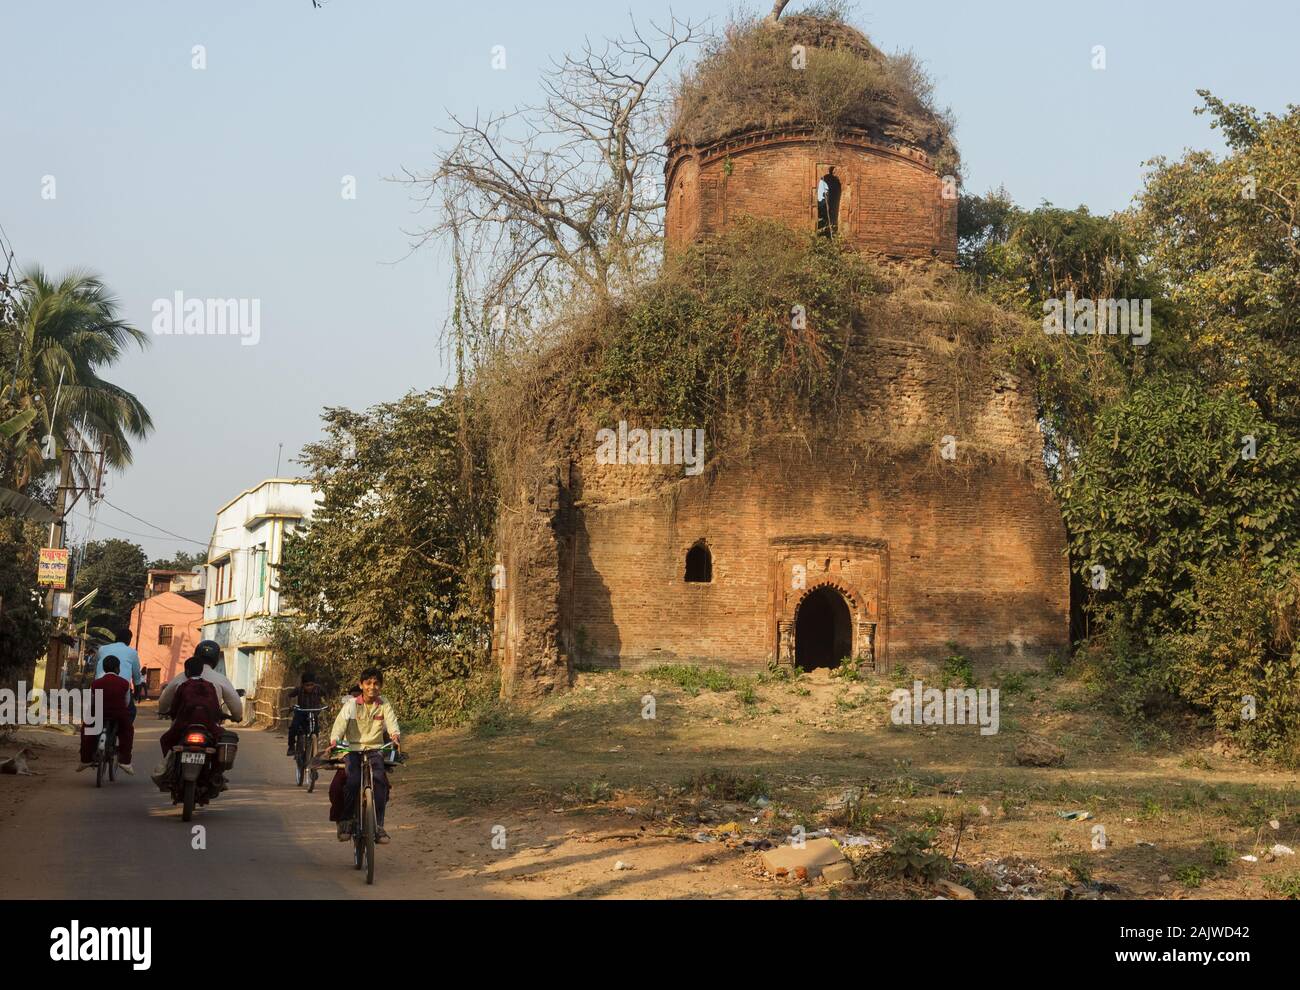 Bishnupur, Westbengalen, Indien - 6. Februar 2018: Eine überwucherte Ruine eines alten Ziegeltempels, der von der Malla-Dynastie erbaut wurde. Kinder fahren auf der Straße, auf der es so ist Stockfoto